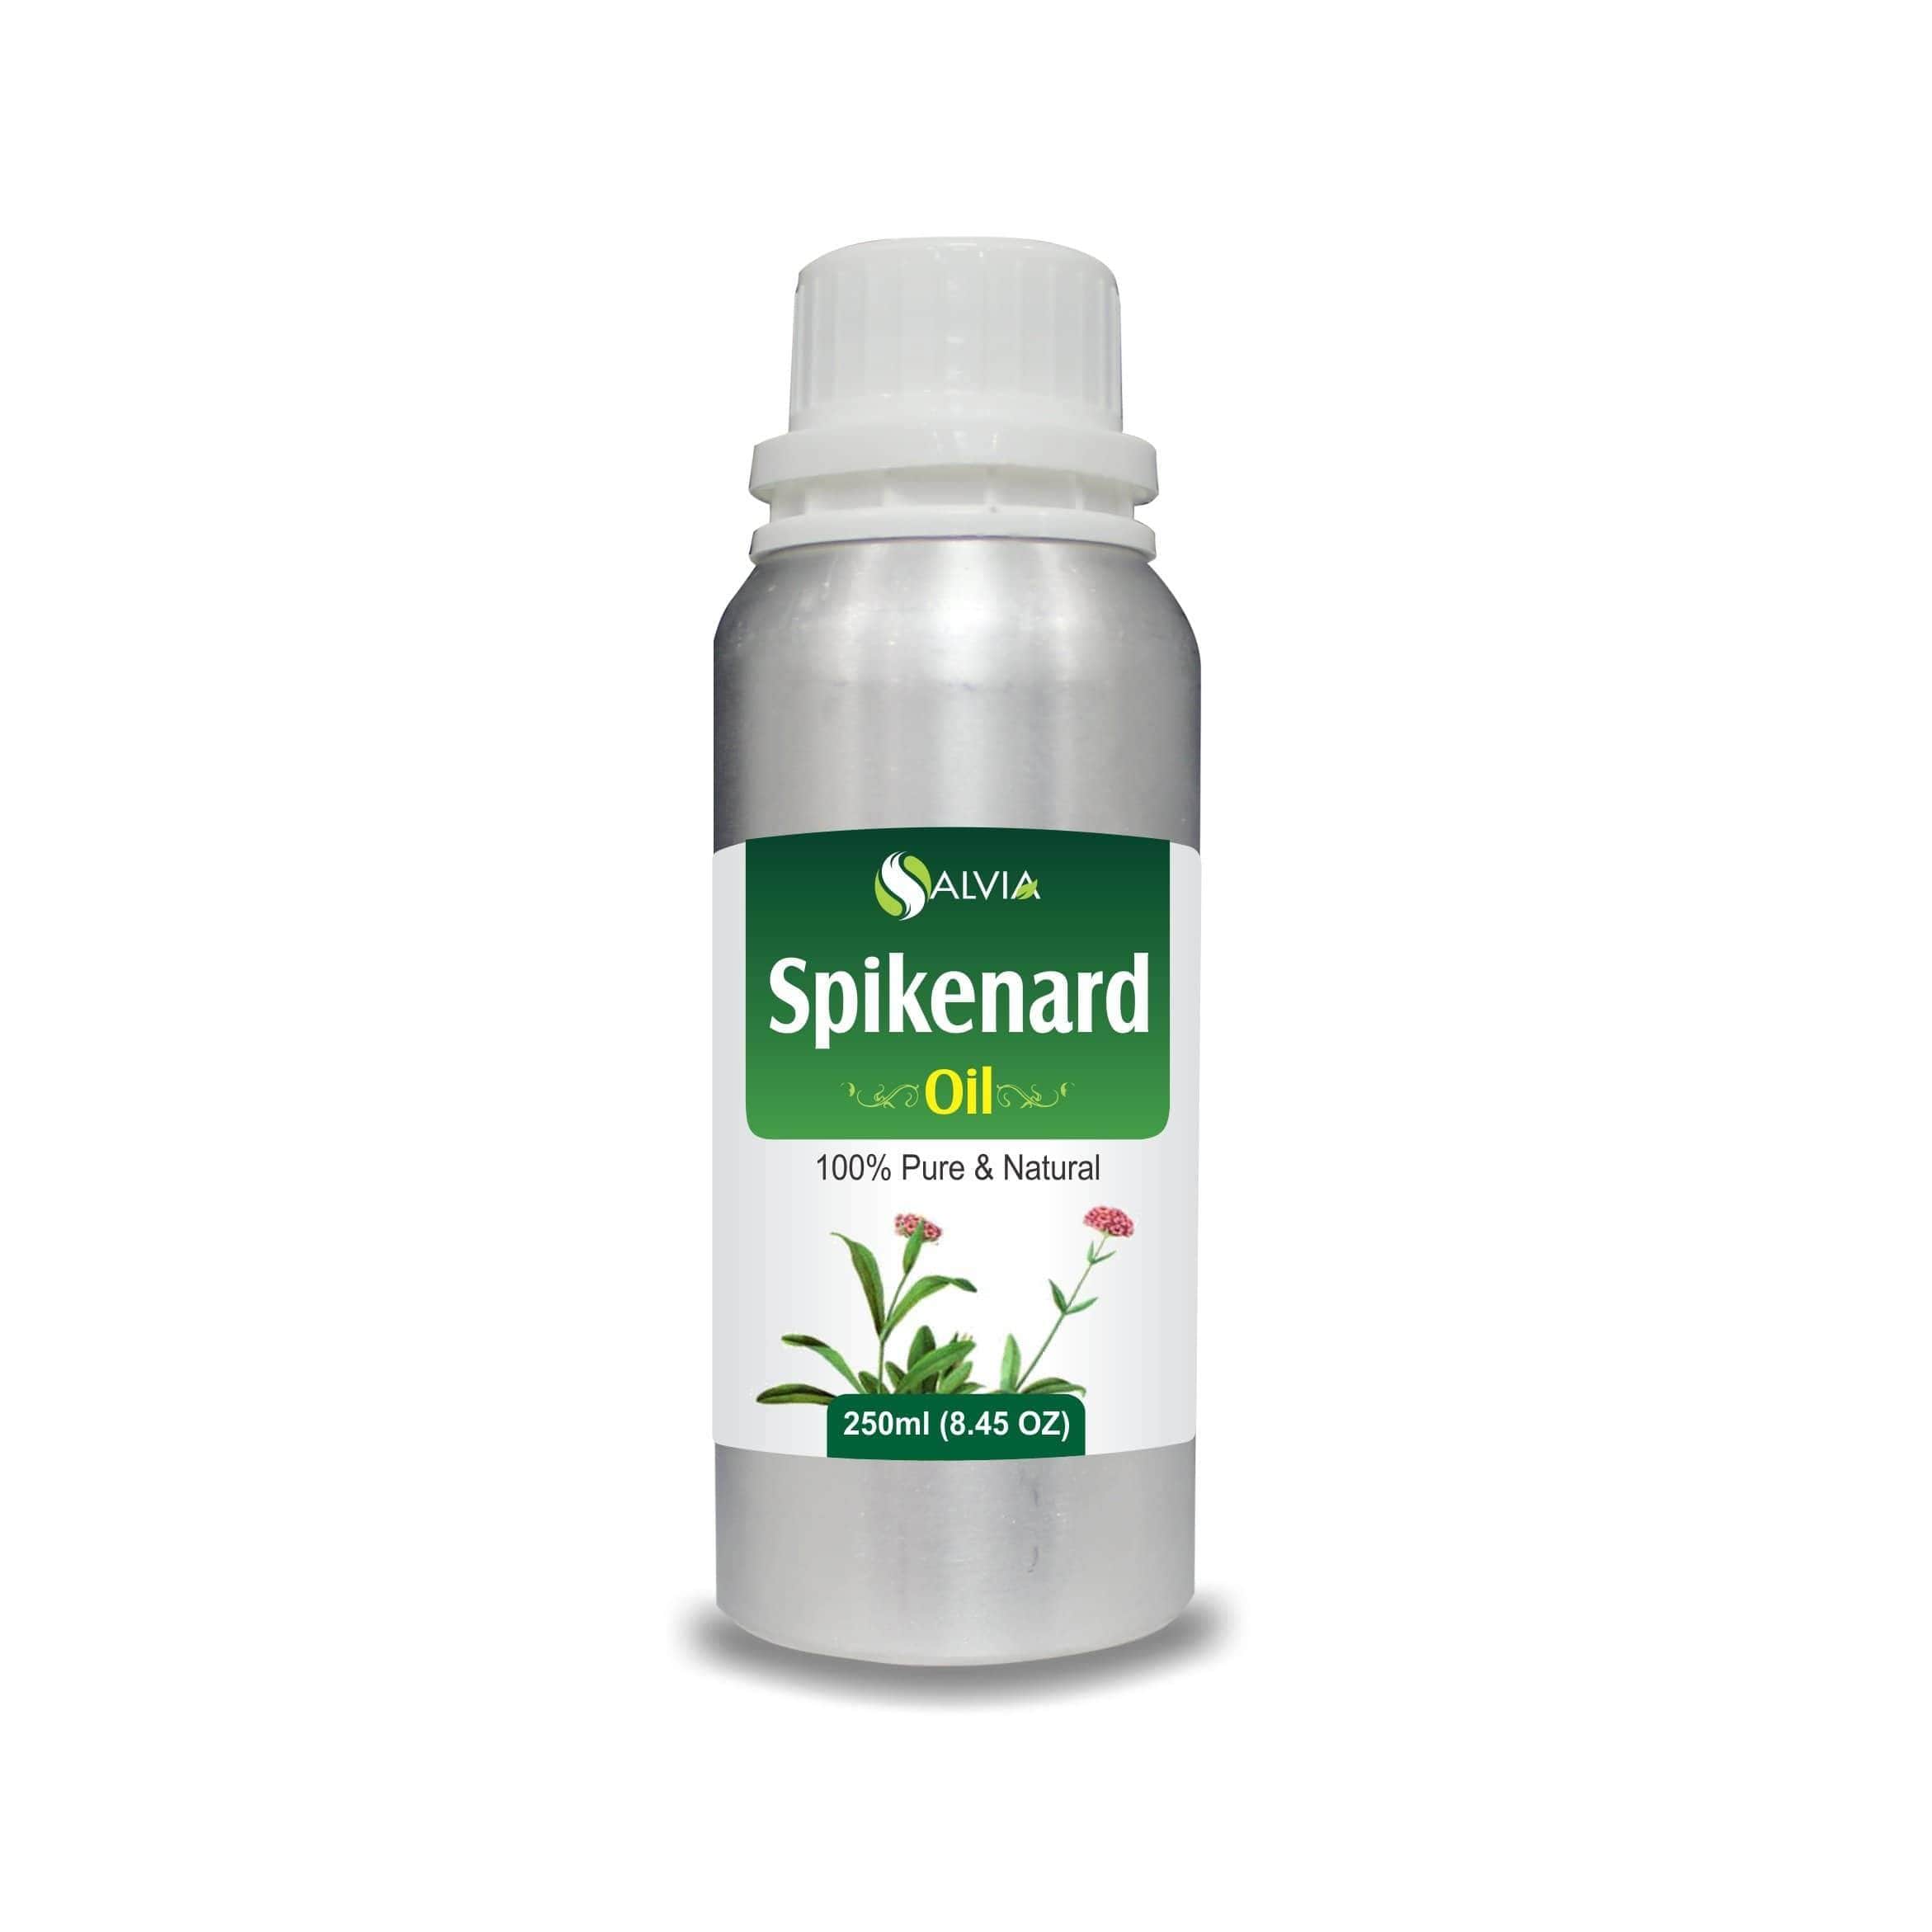 spikenard oil benefits for skin